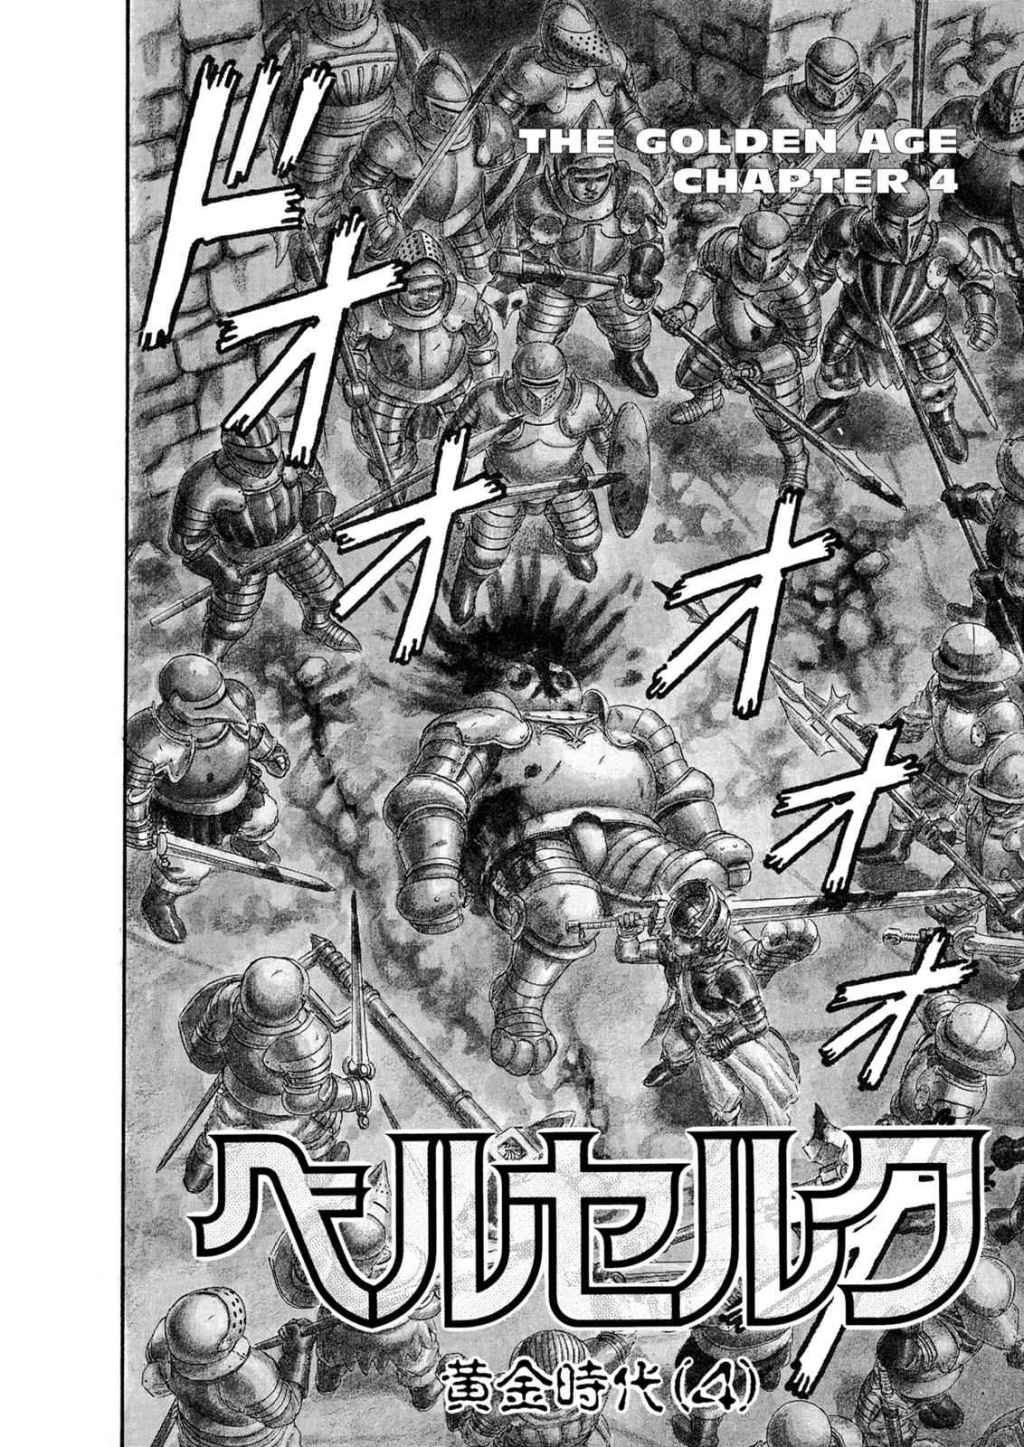 Manga Fight Scenes: Cooler Than Comics?